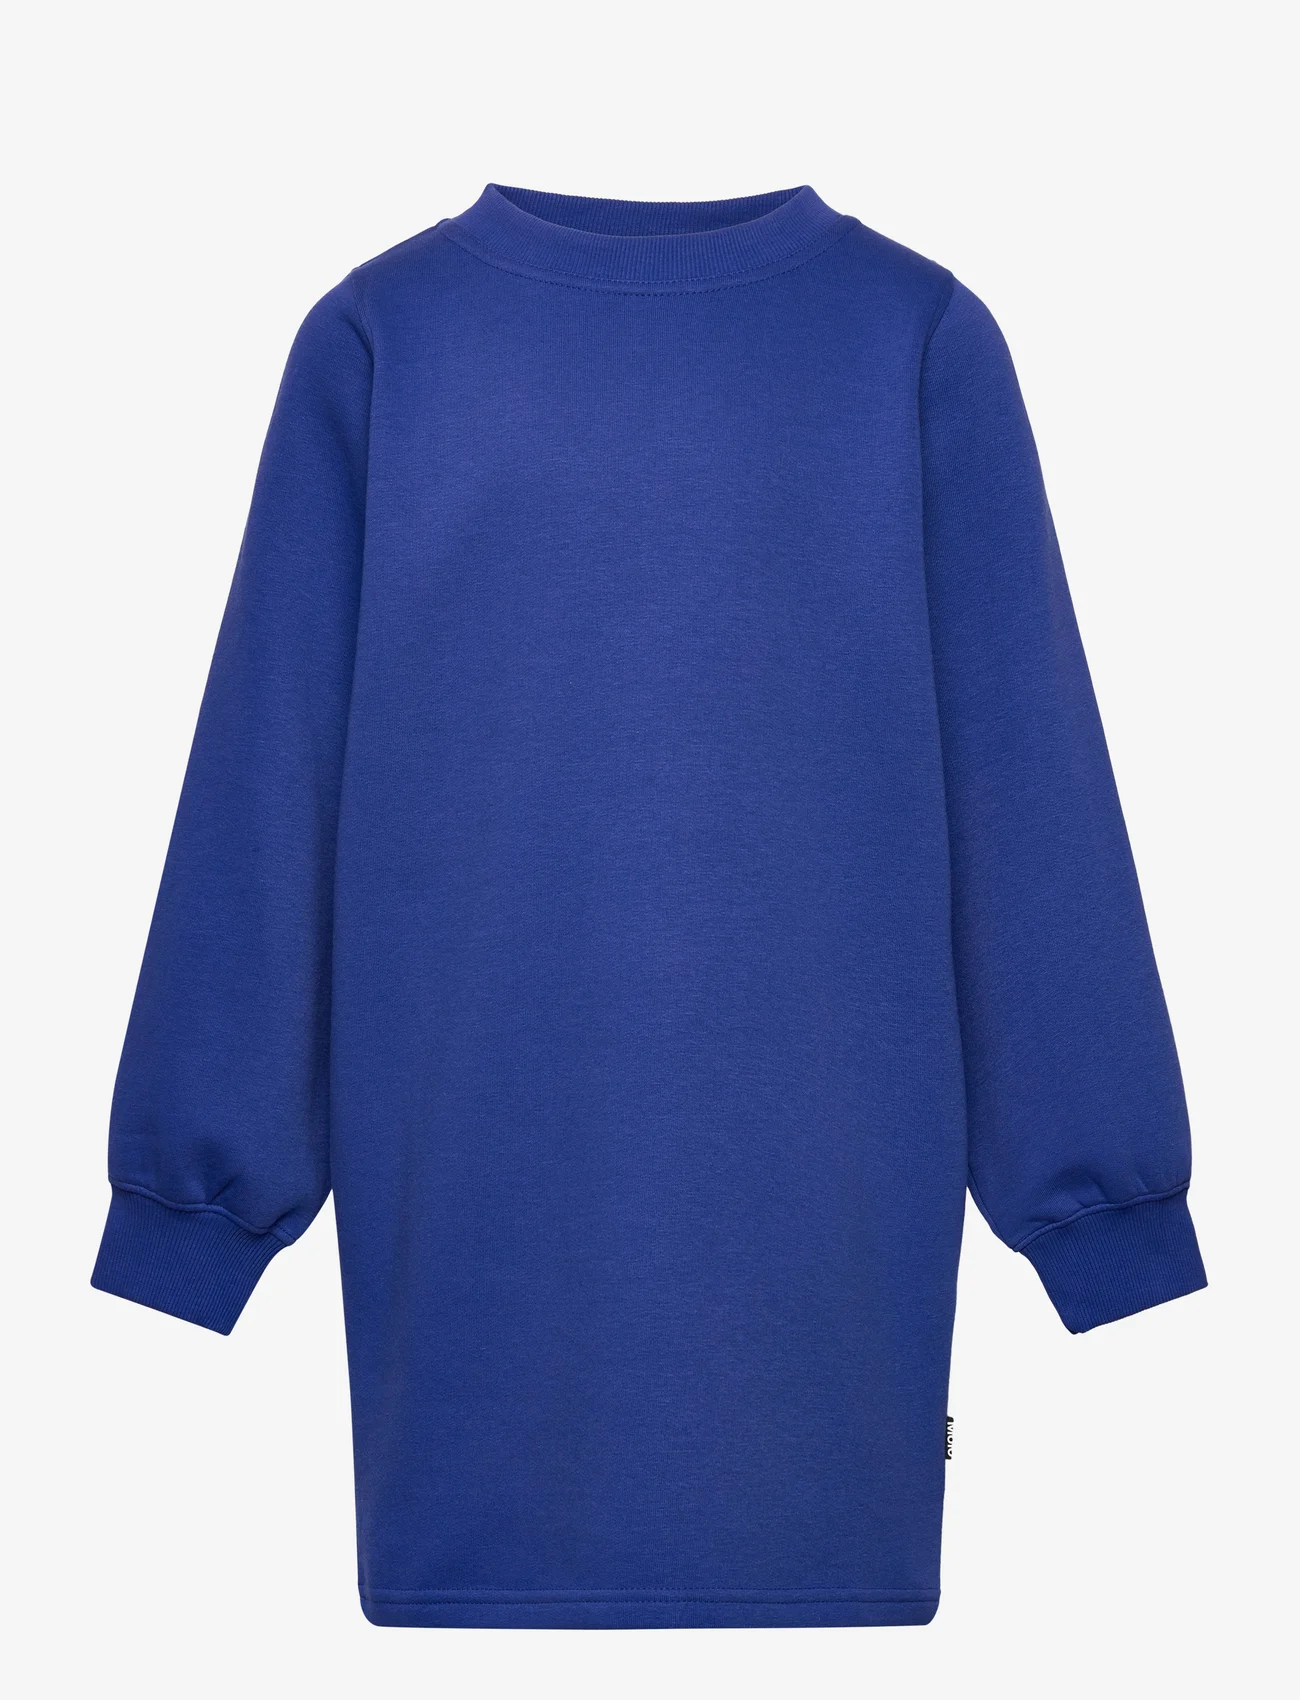 Molo - Corvina - casual jurken met lange mouwen - twillight blue - 0